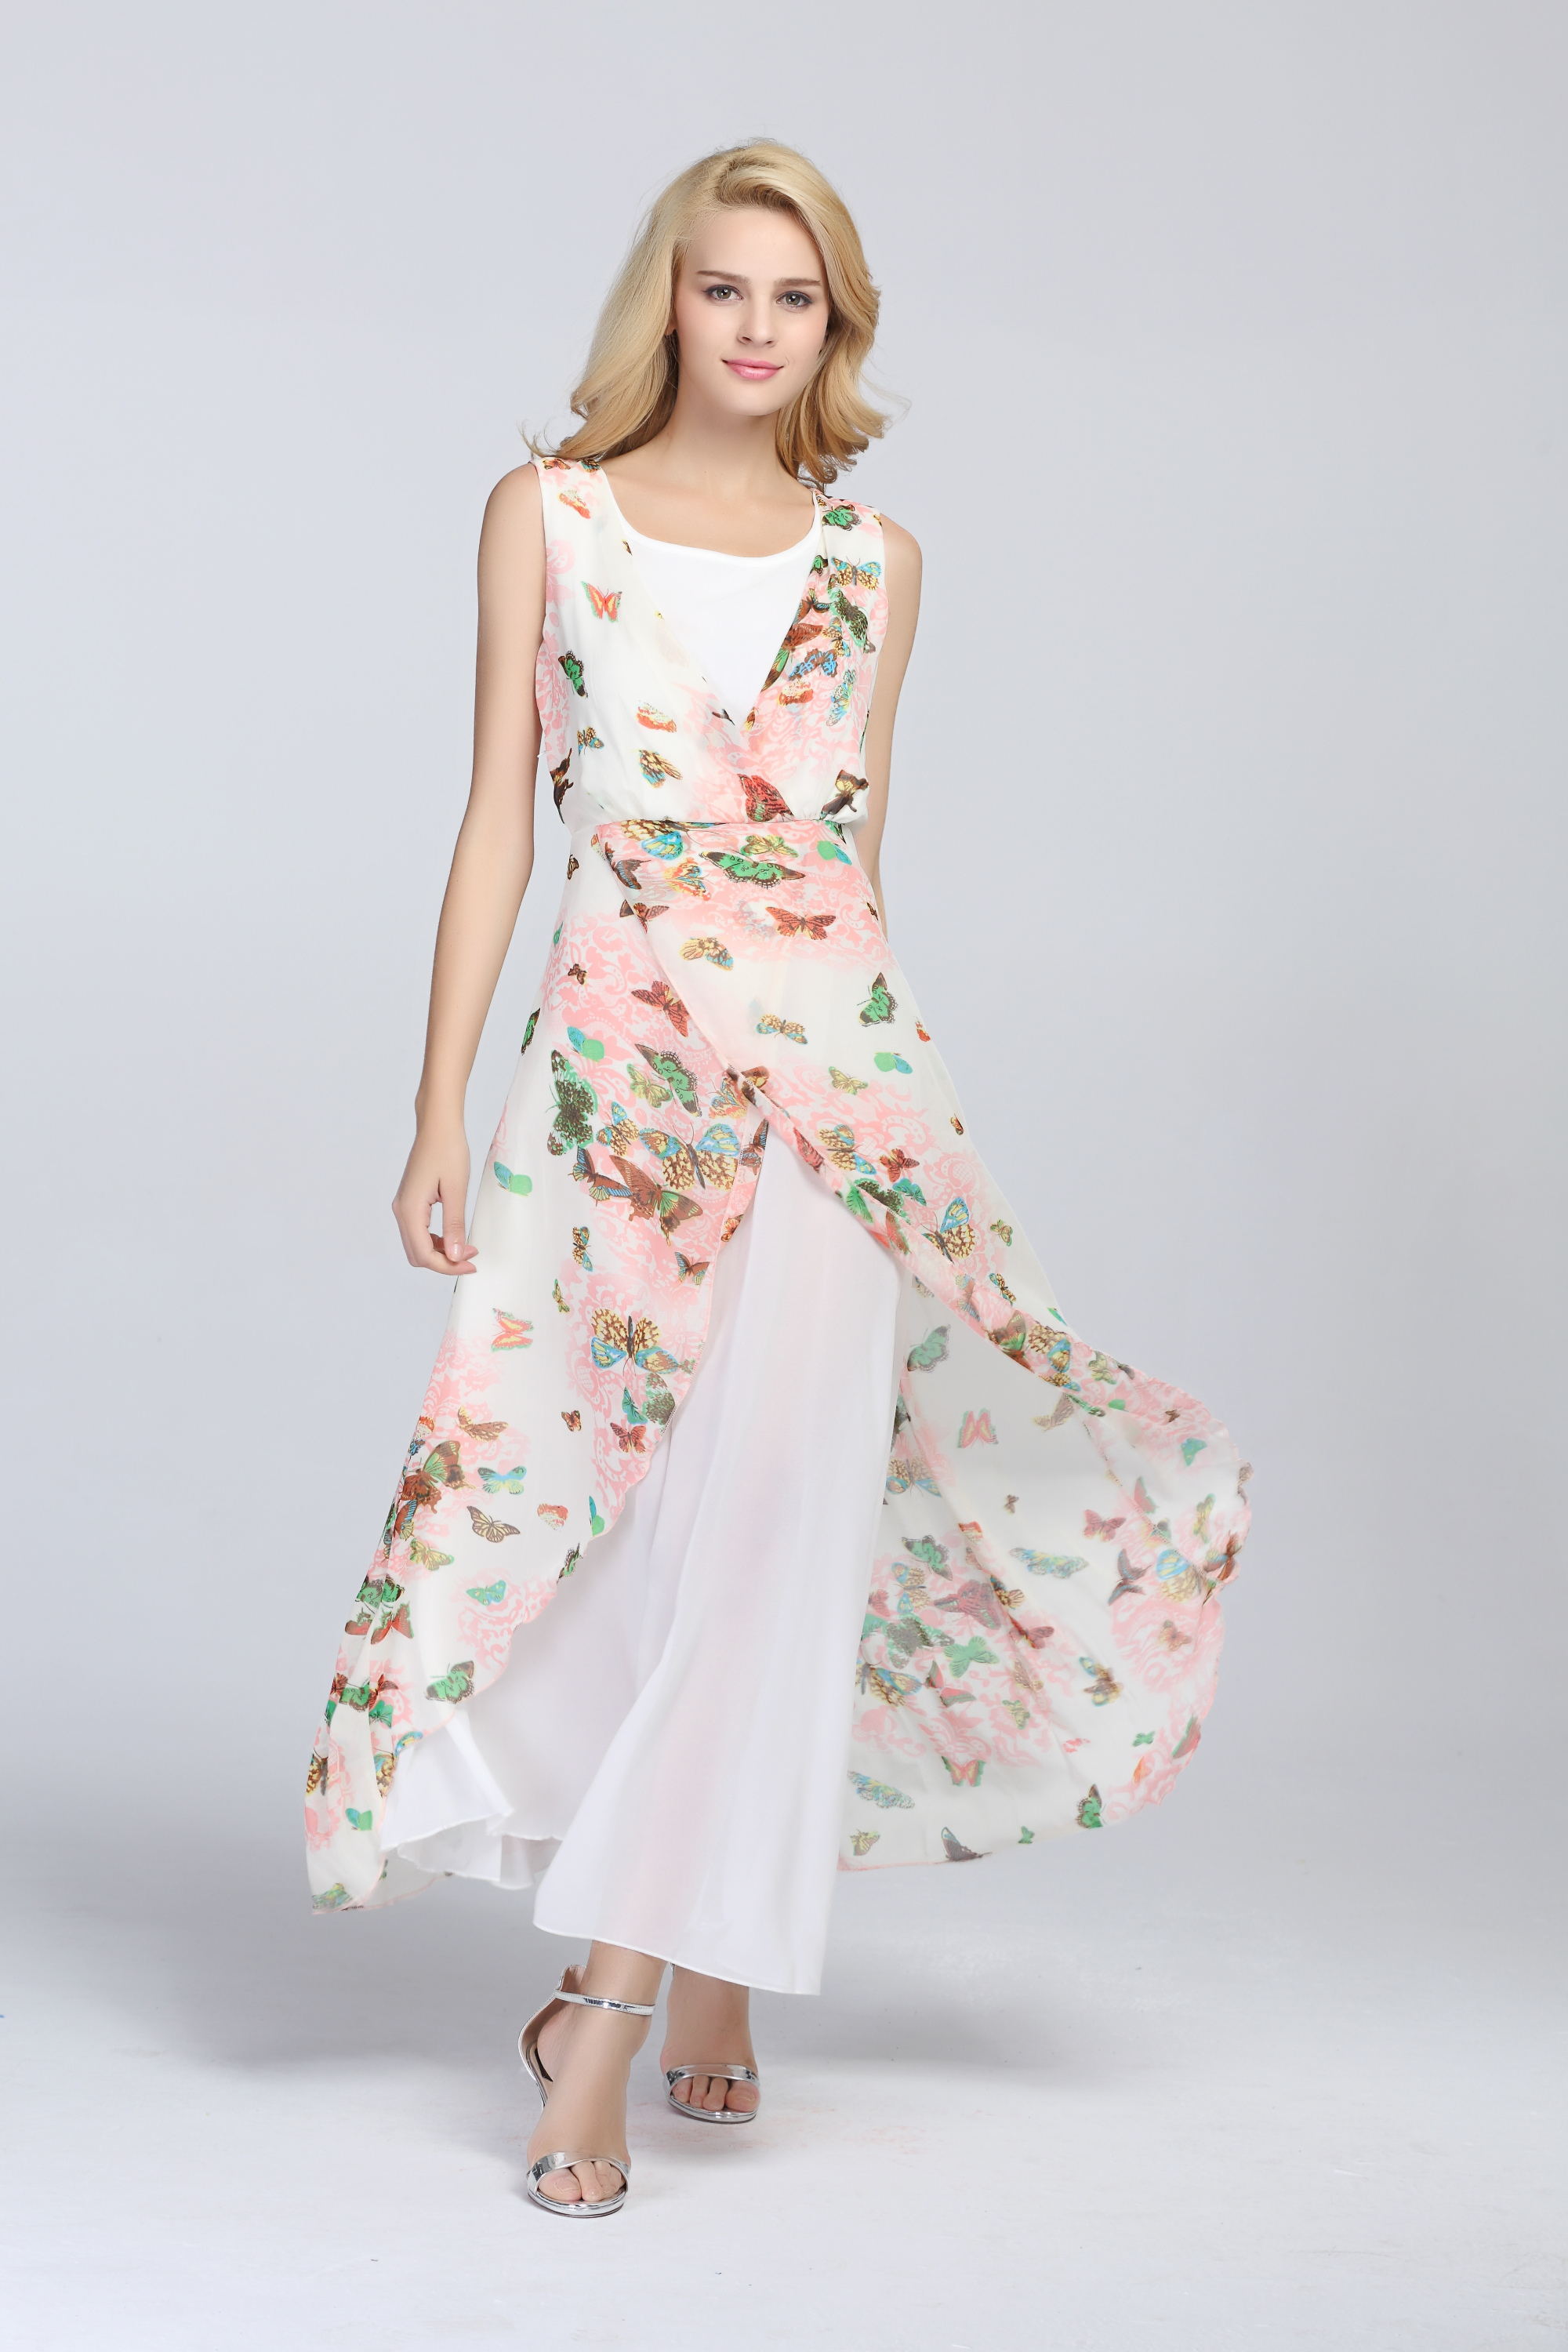 Sleeveless Chiffon Floral Bow Layered Pleated Maxi Dress - Milanoo.com